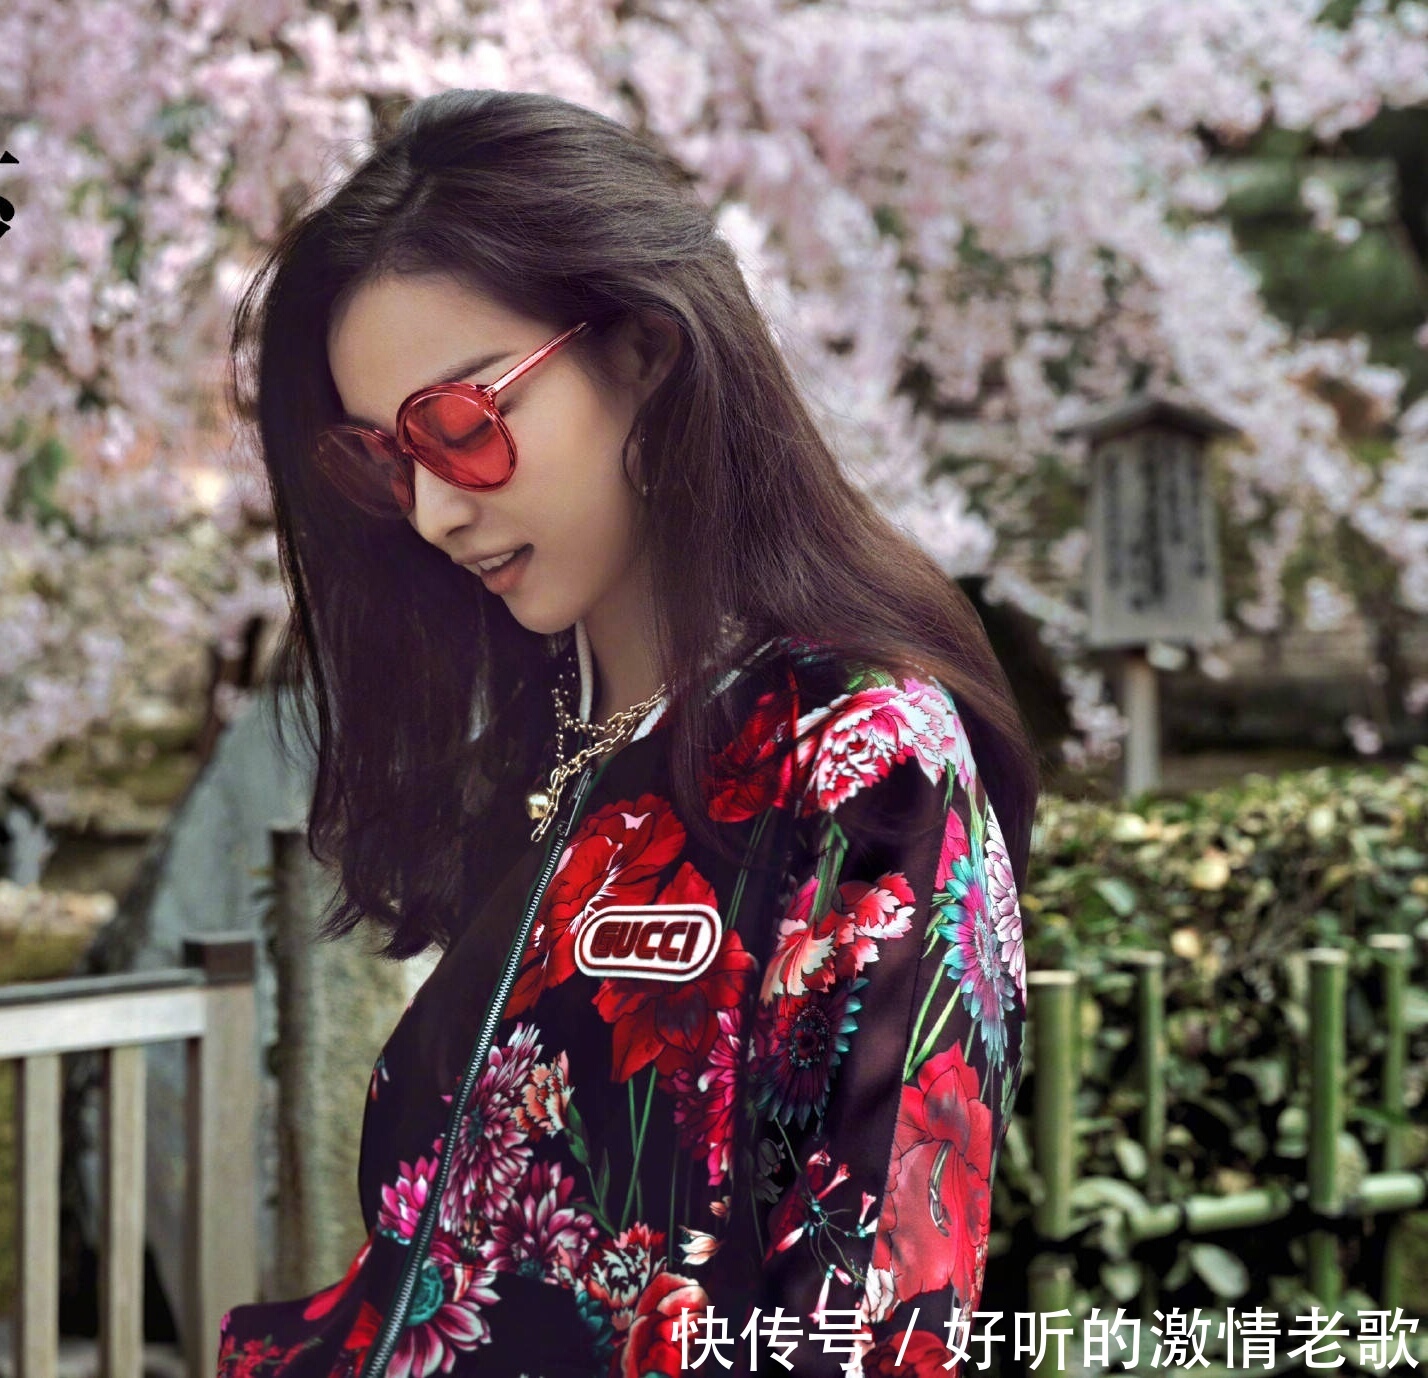 倪妮时尚芭莎五月封面,在樱花盛开的京都,再次